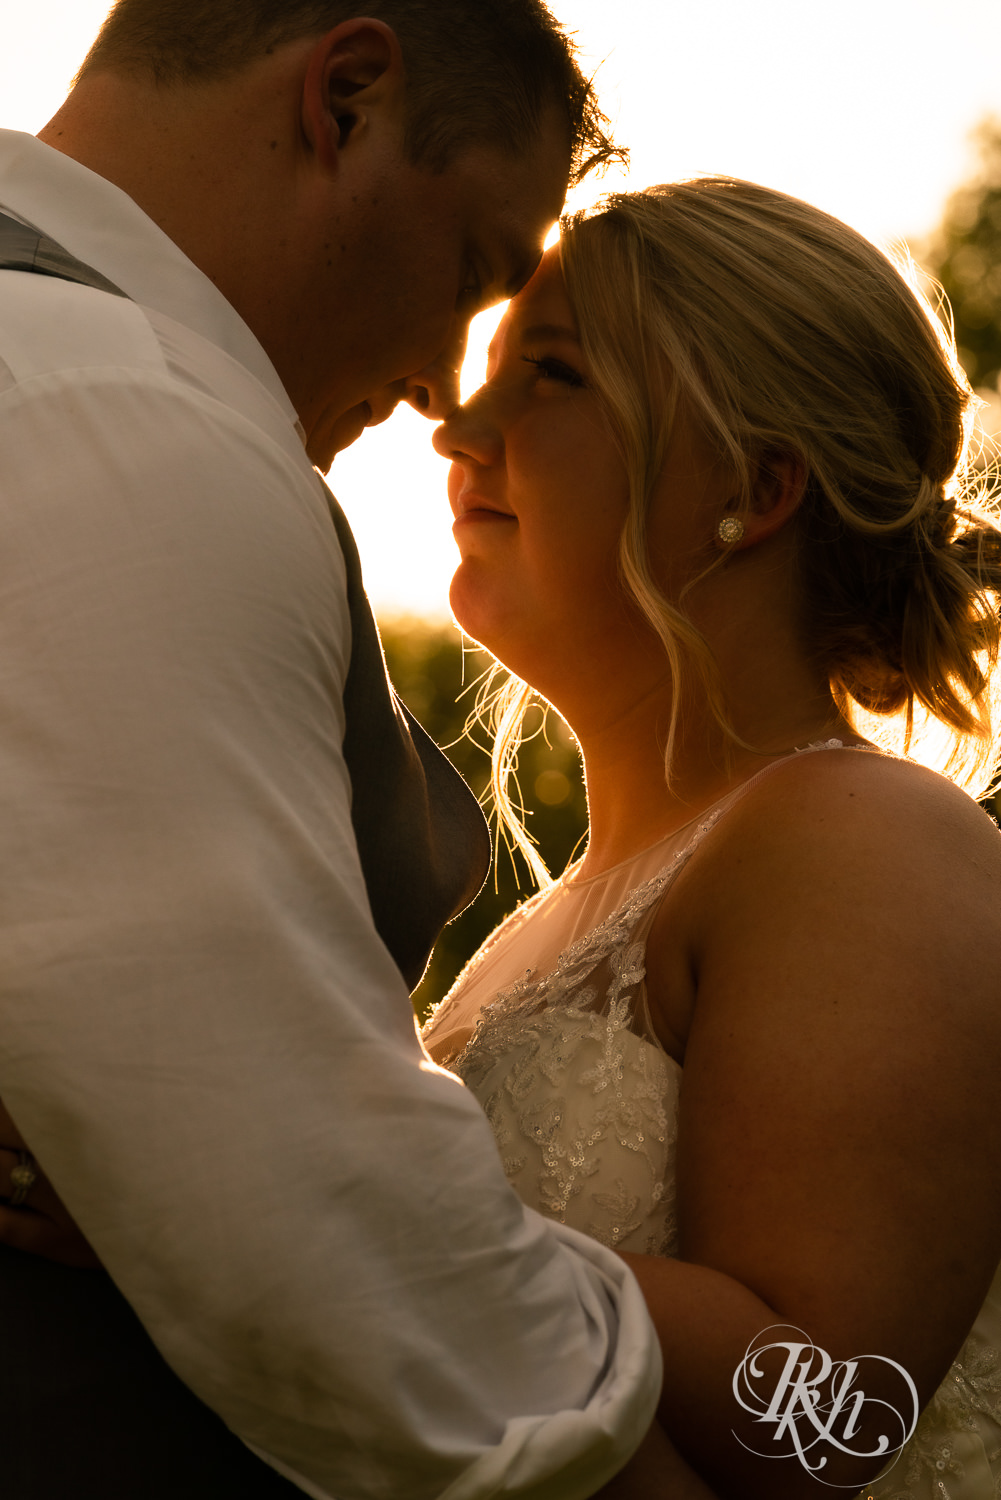 Bride and groom kiss at sunset at wedding at Barn at Mirror Lake in Mondovi, Wisconsin.